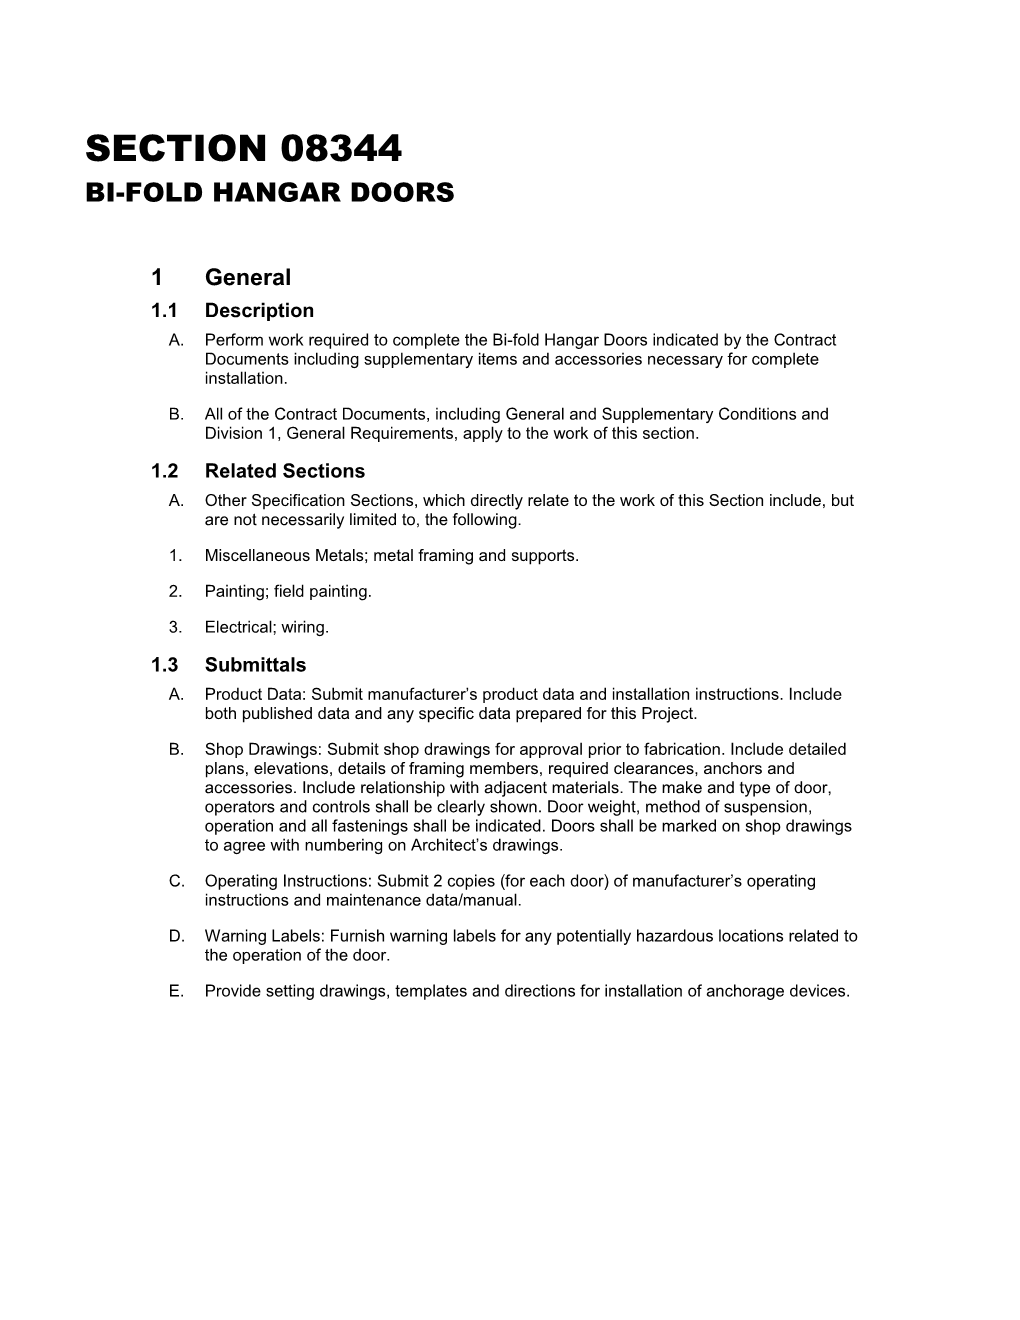 Bi-Fold Hangar Doors